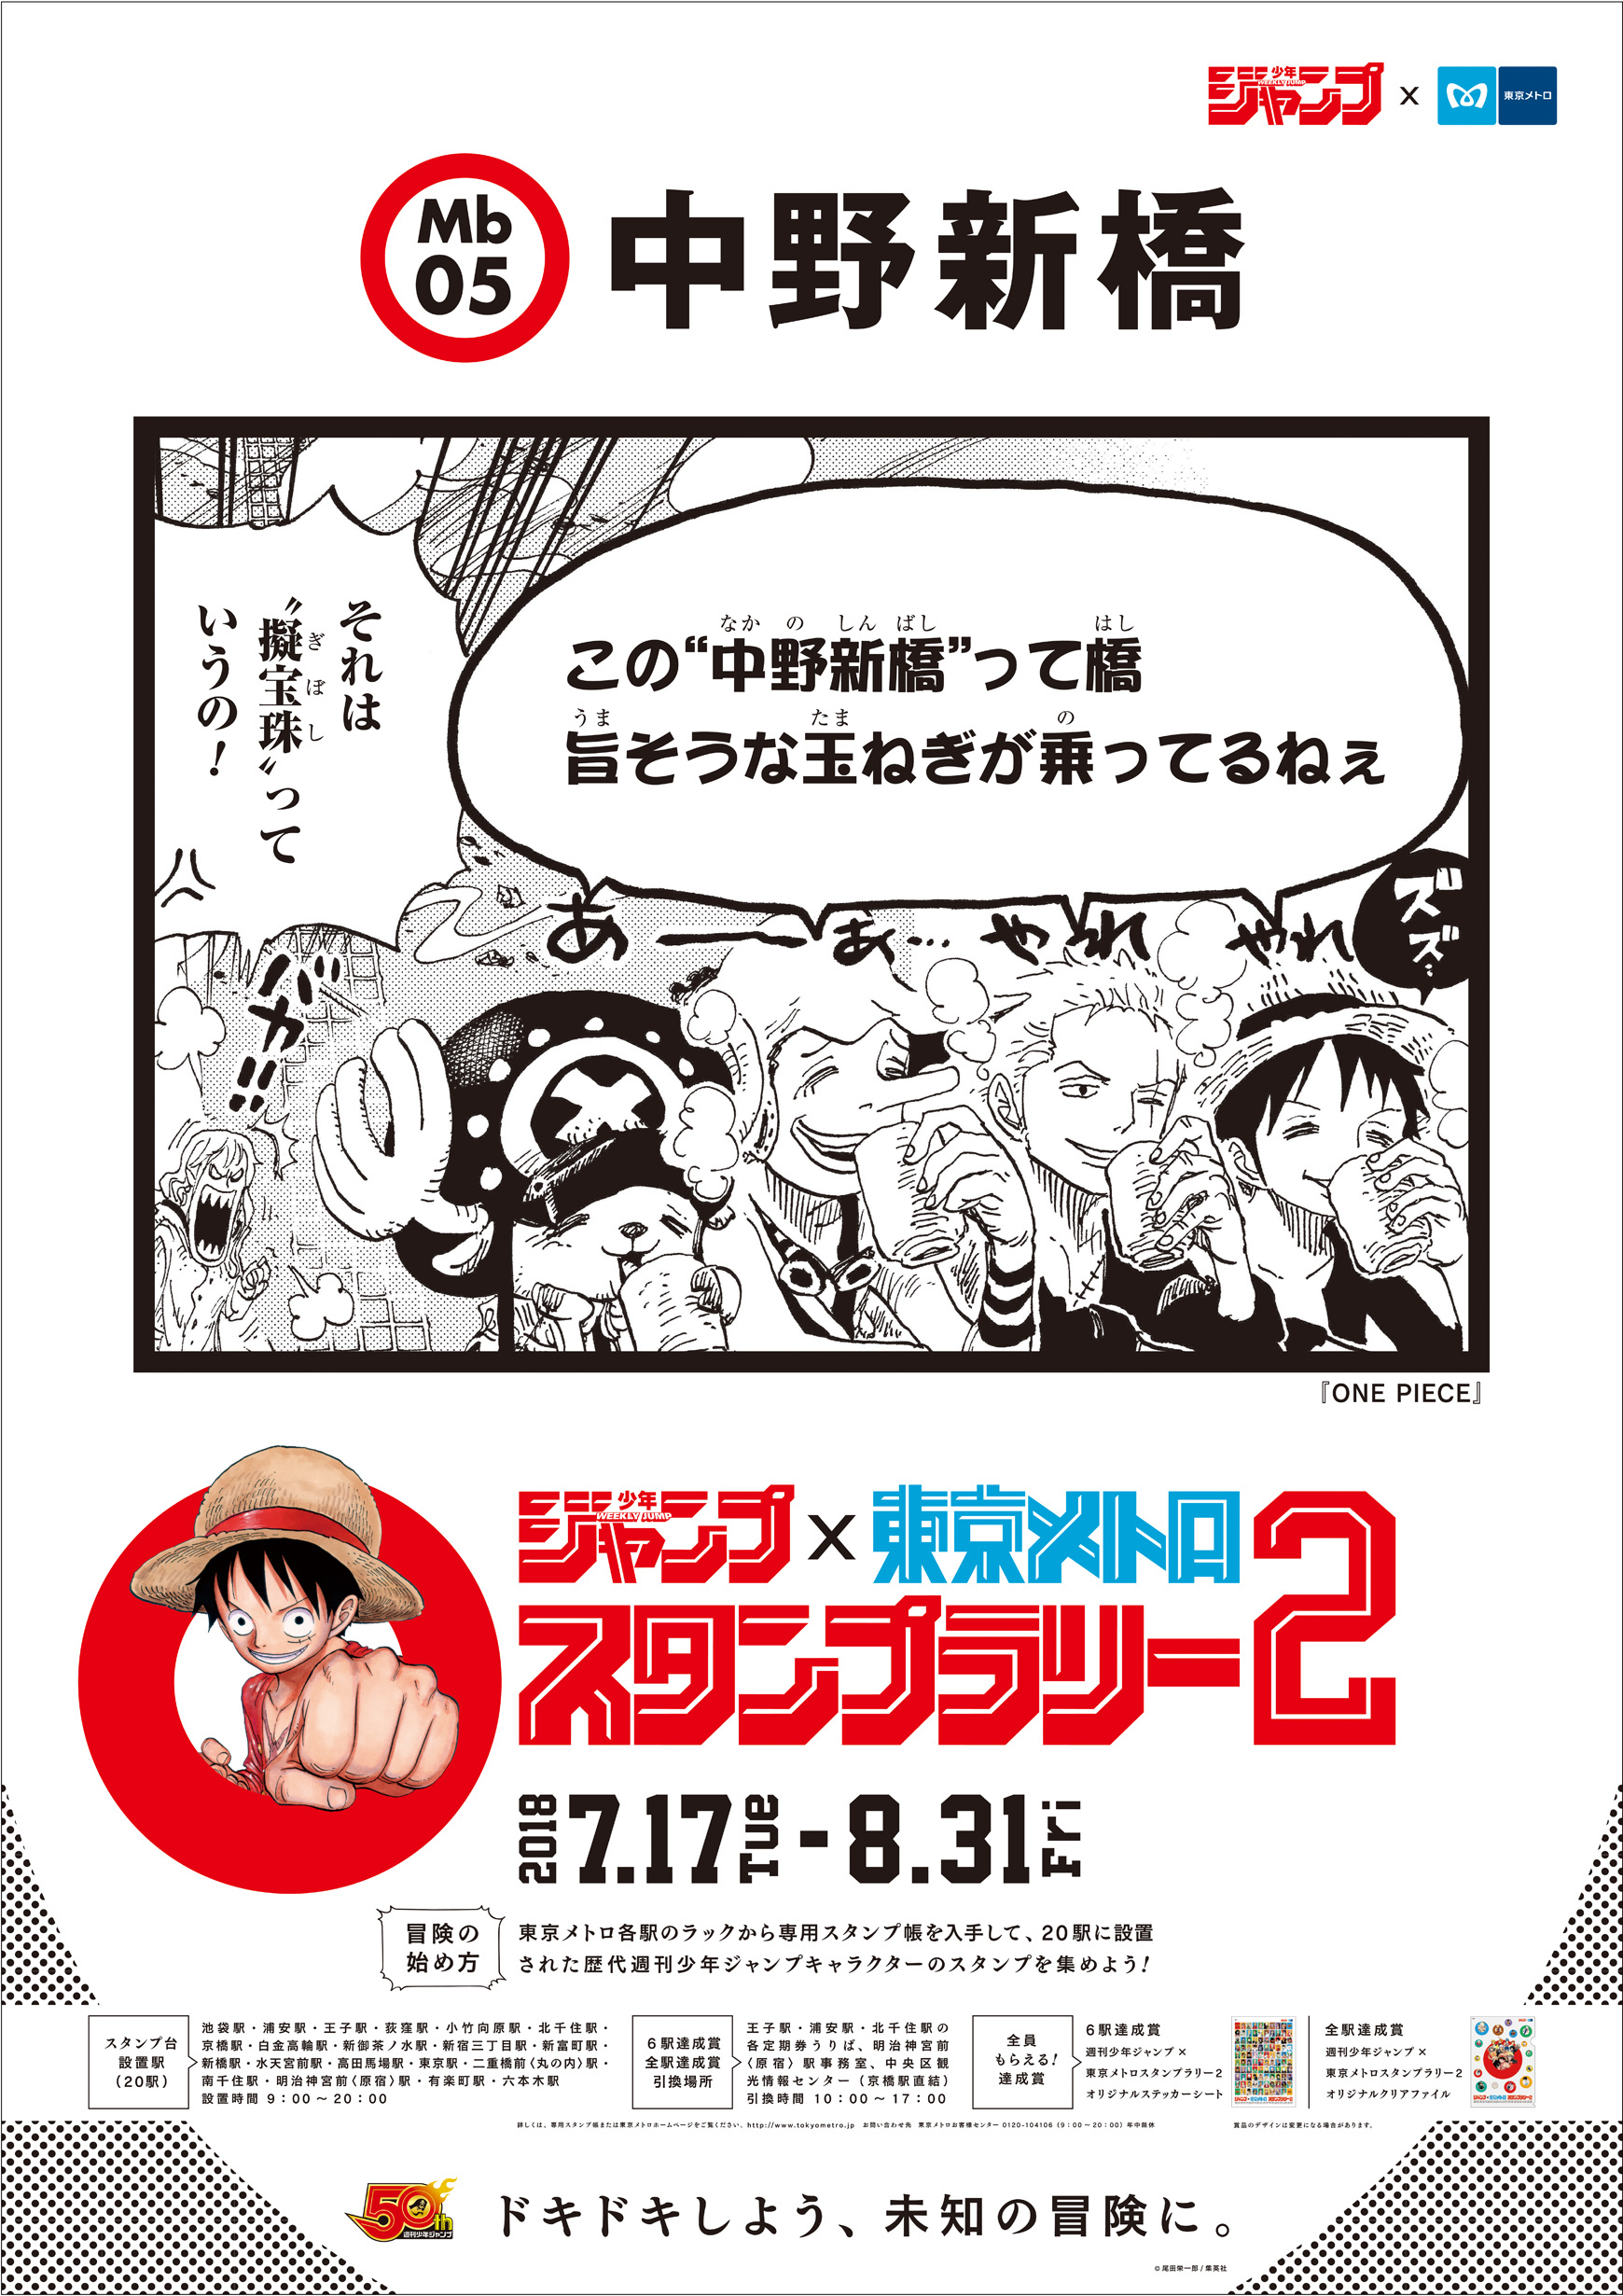 中野新橋駅に張り出されるポスターは『ONE PIECE』 (C)尾田栄一郎／集英社